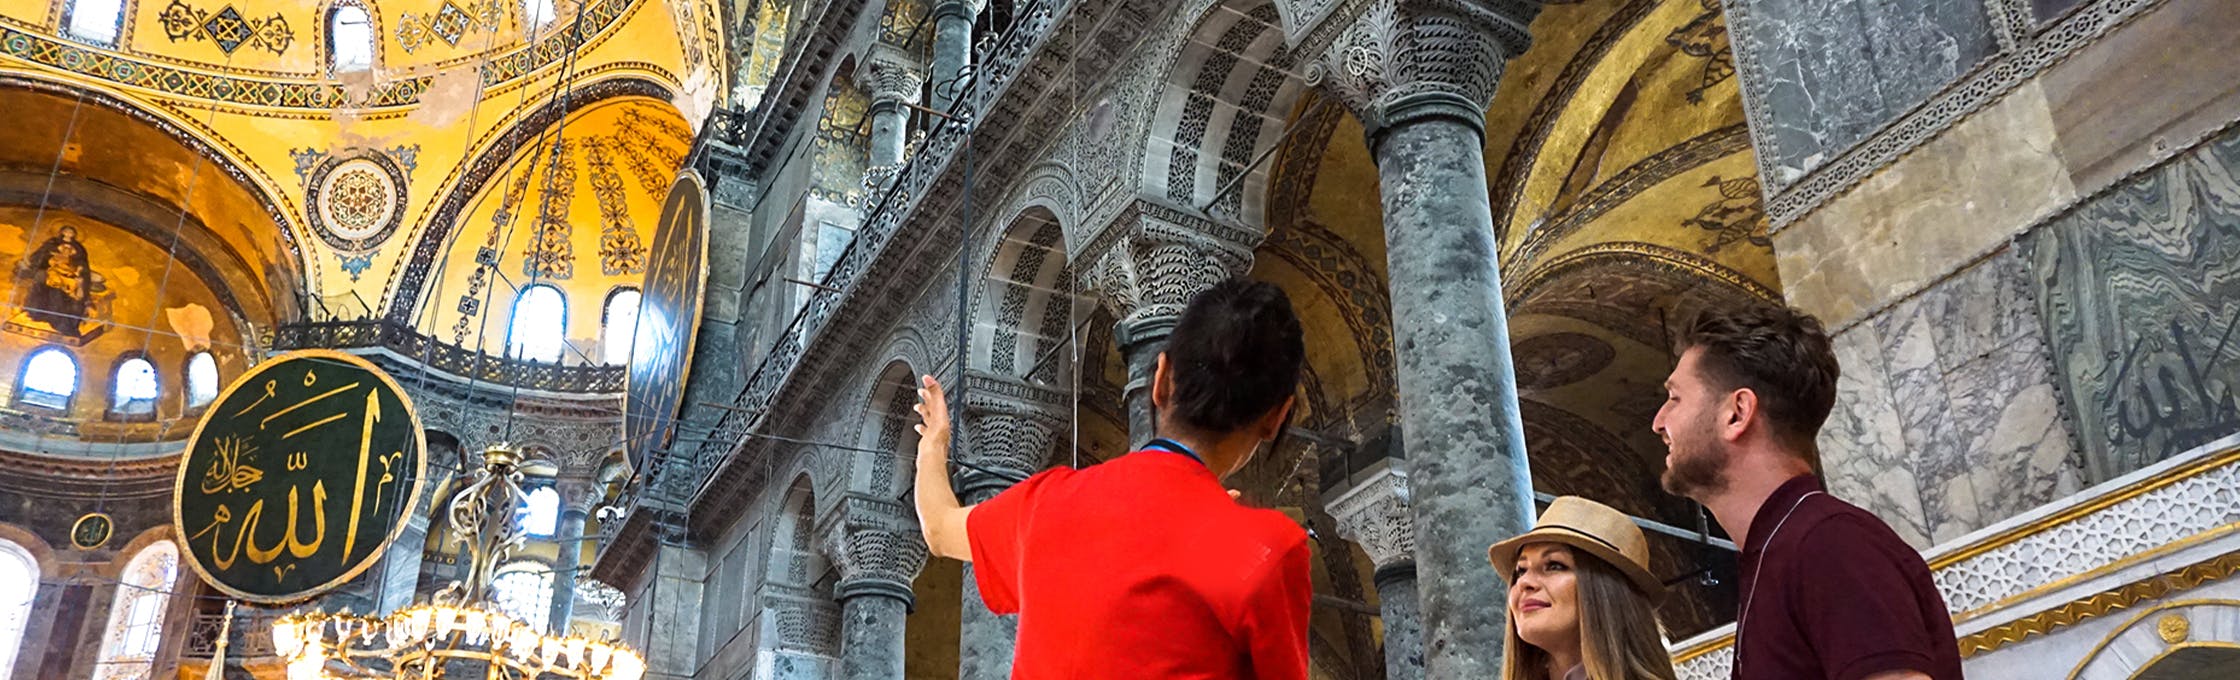 Rundvisning i Hagia Sophia med højdepunkter og audioguide